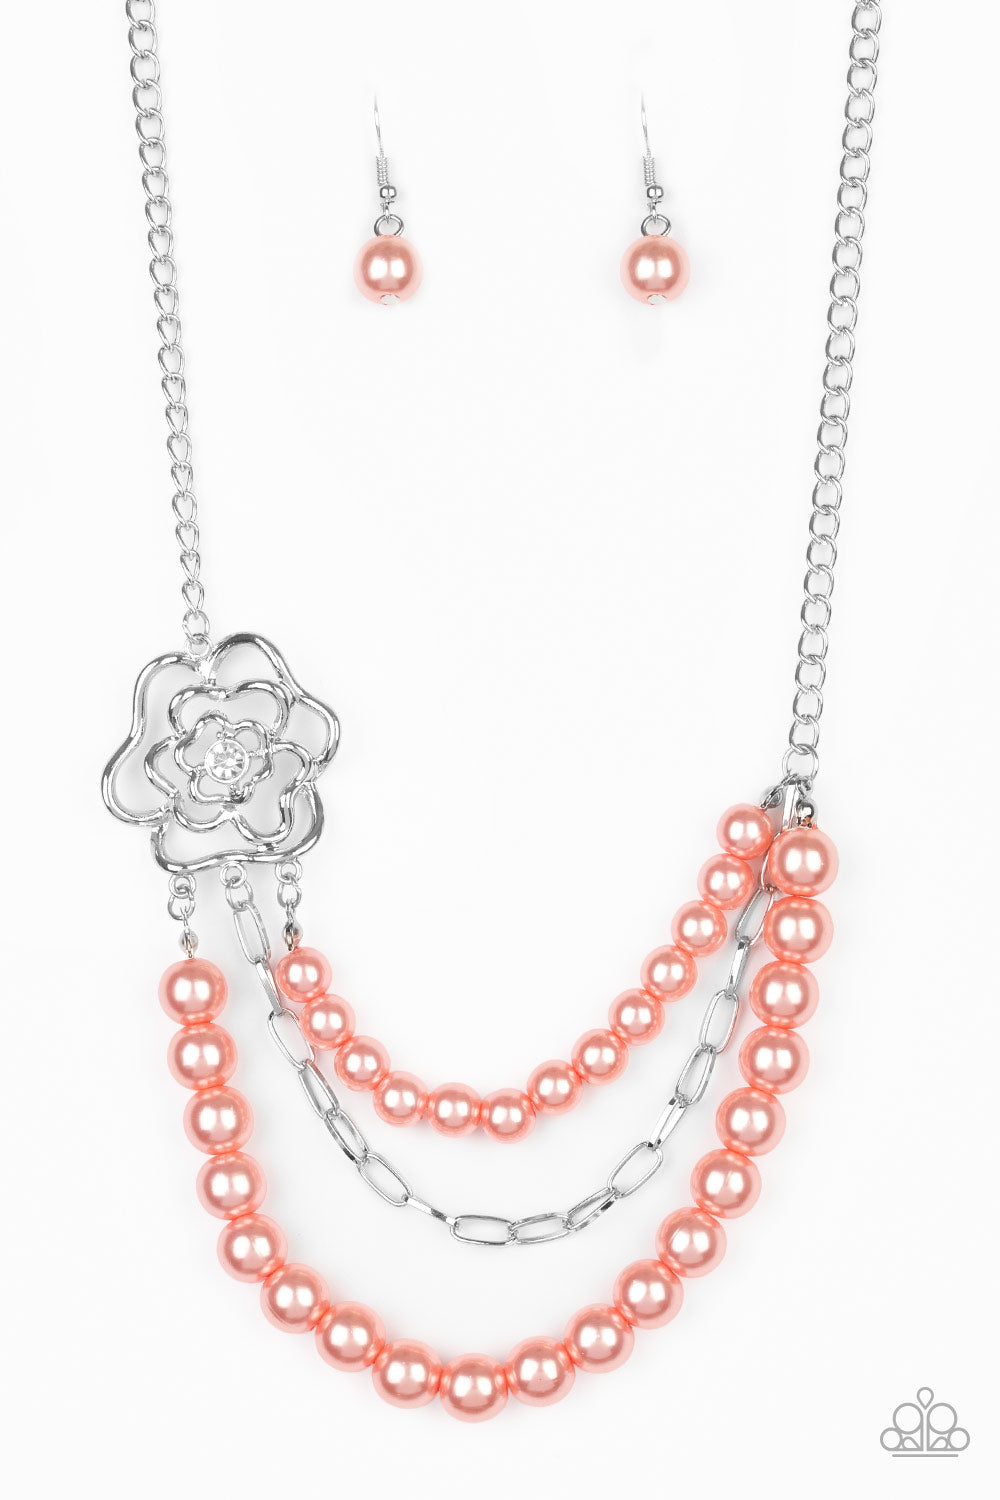 Paparazzi Necklace ~ Fabulously Floral - Orange